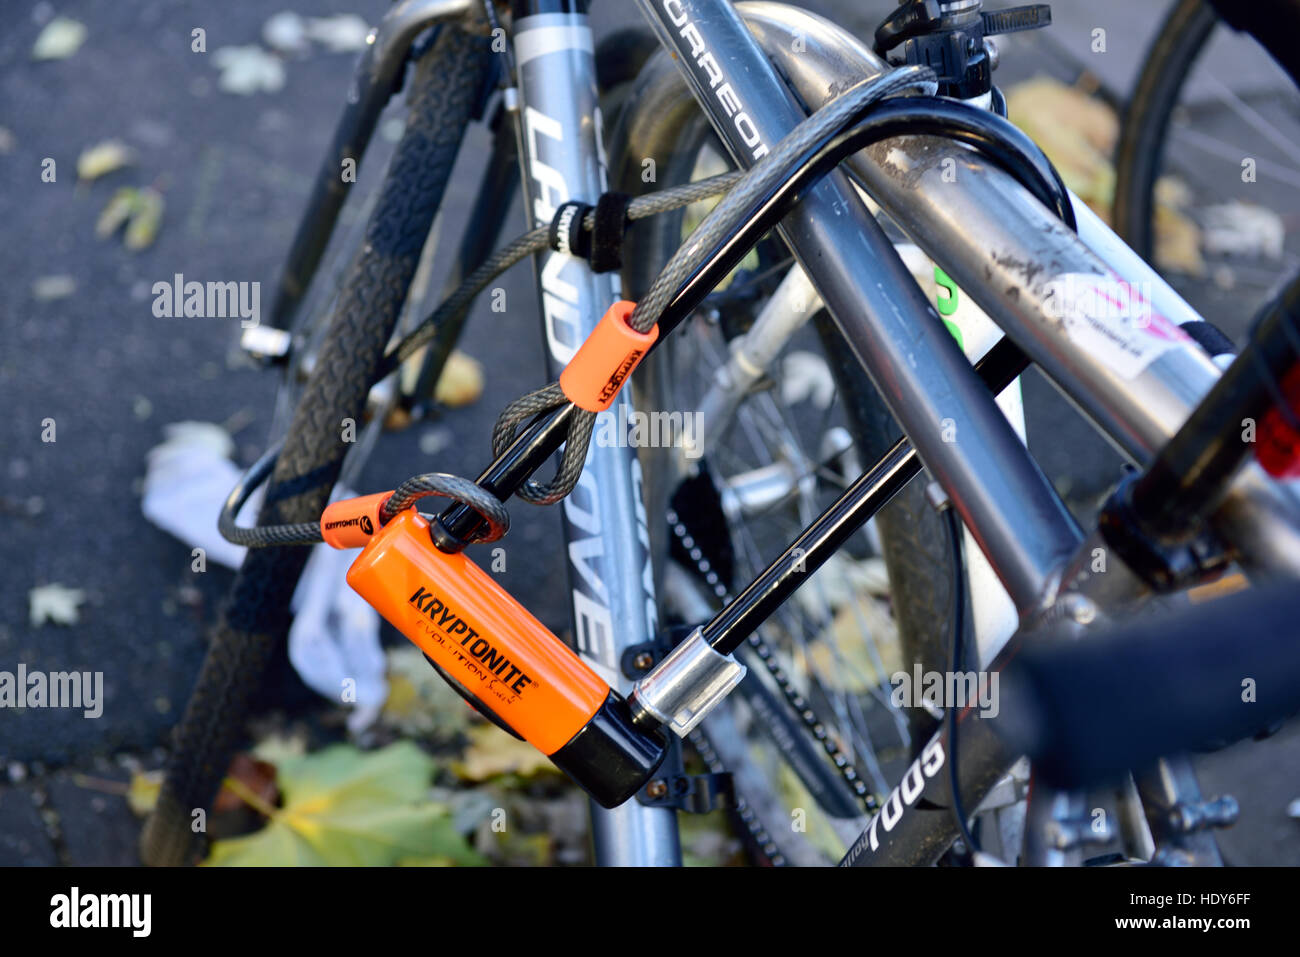 Fahrrad gesperrt Rack mit "D Kryptonite" und Kabalen Fahrradschloss, UK Stockfoto